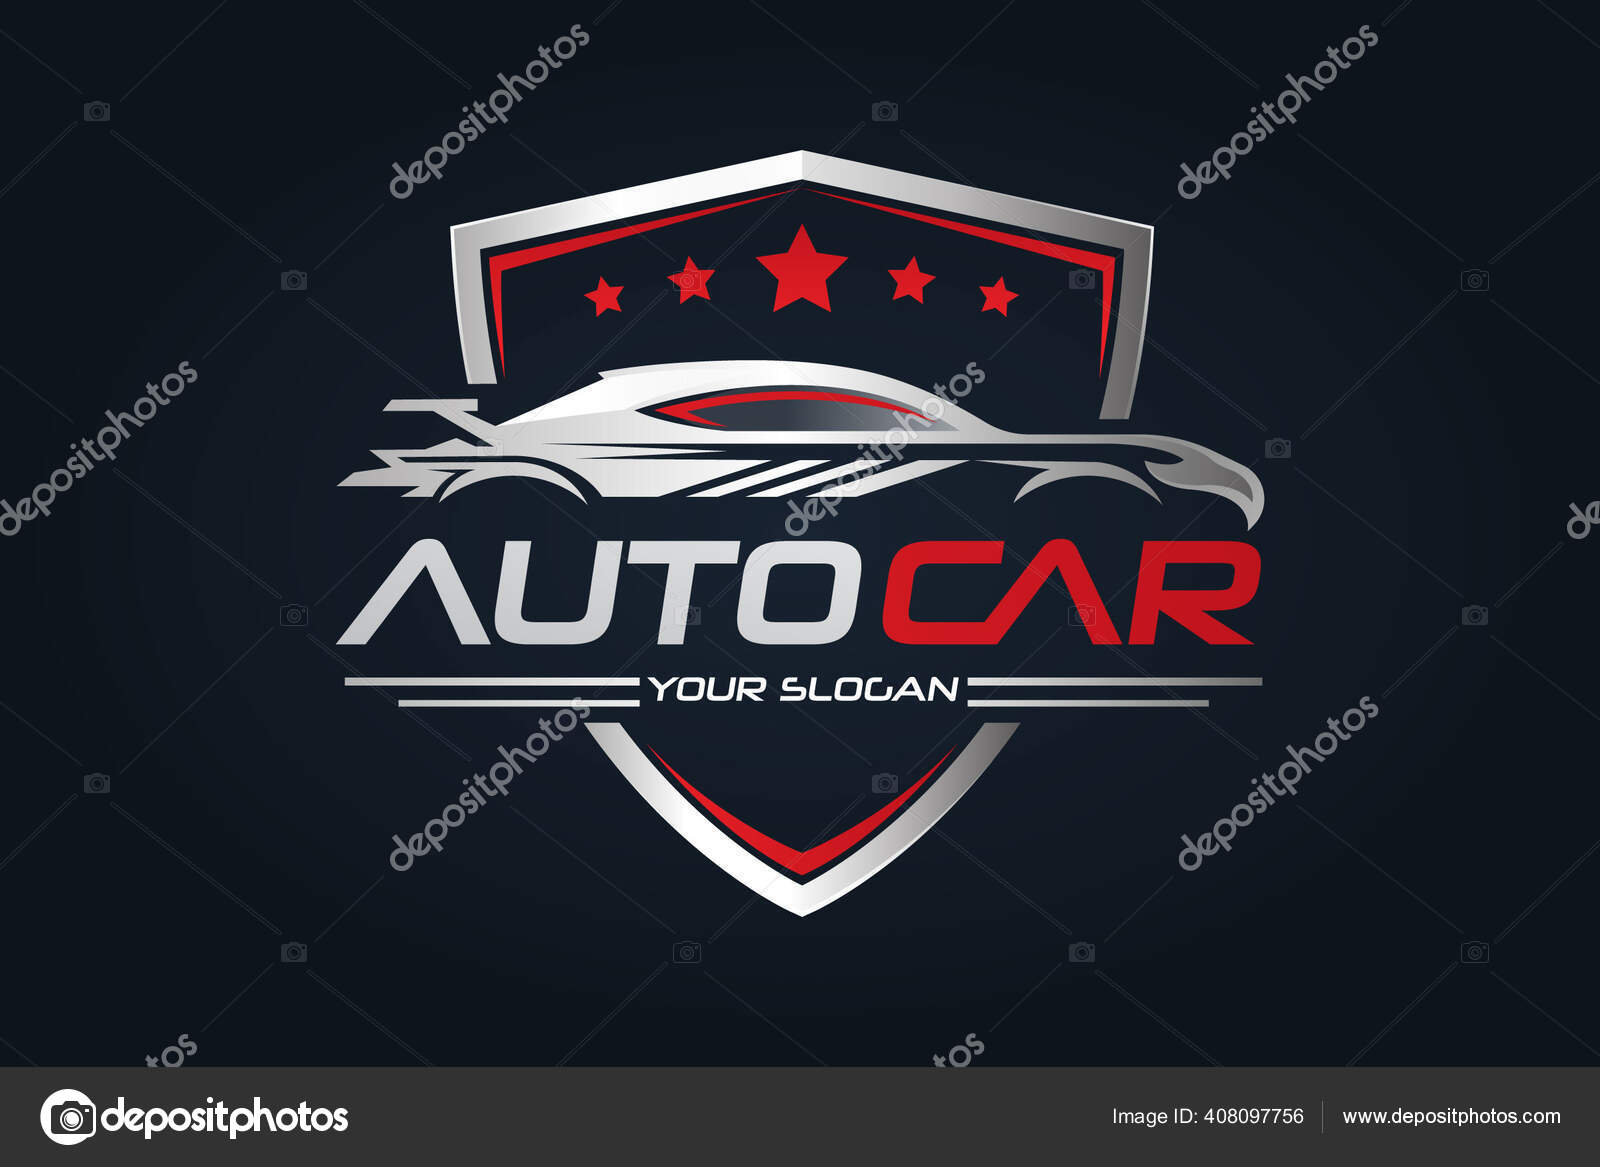 Auto garage logo design Royalty Free Vector Image